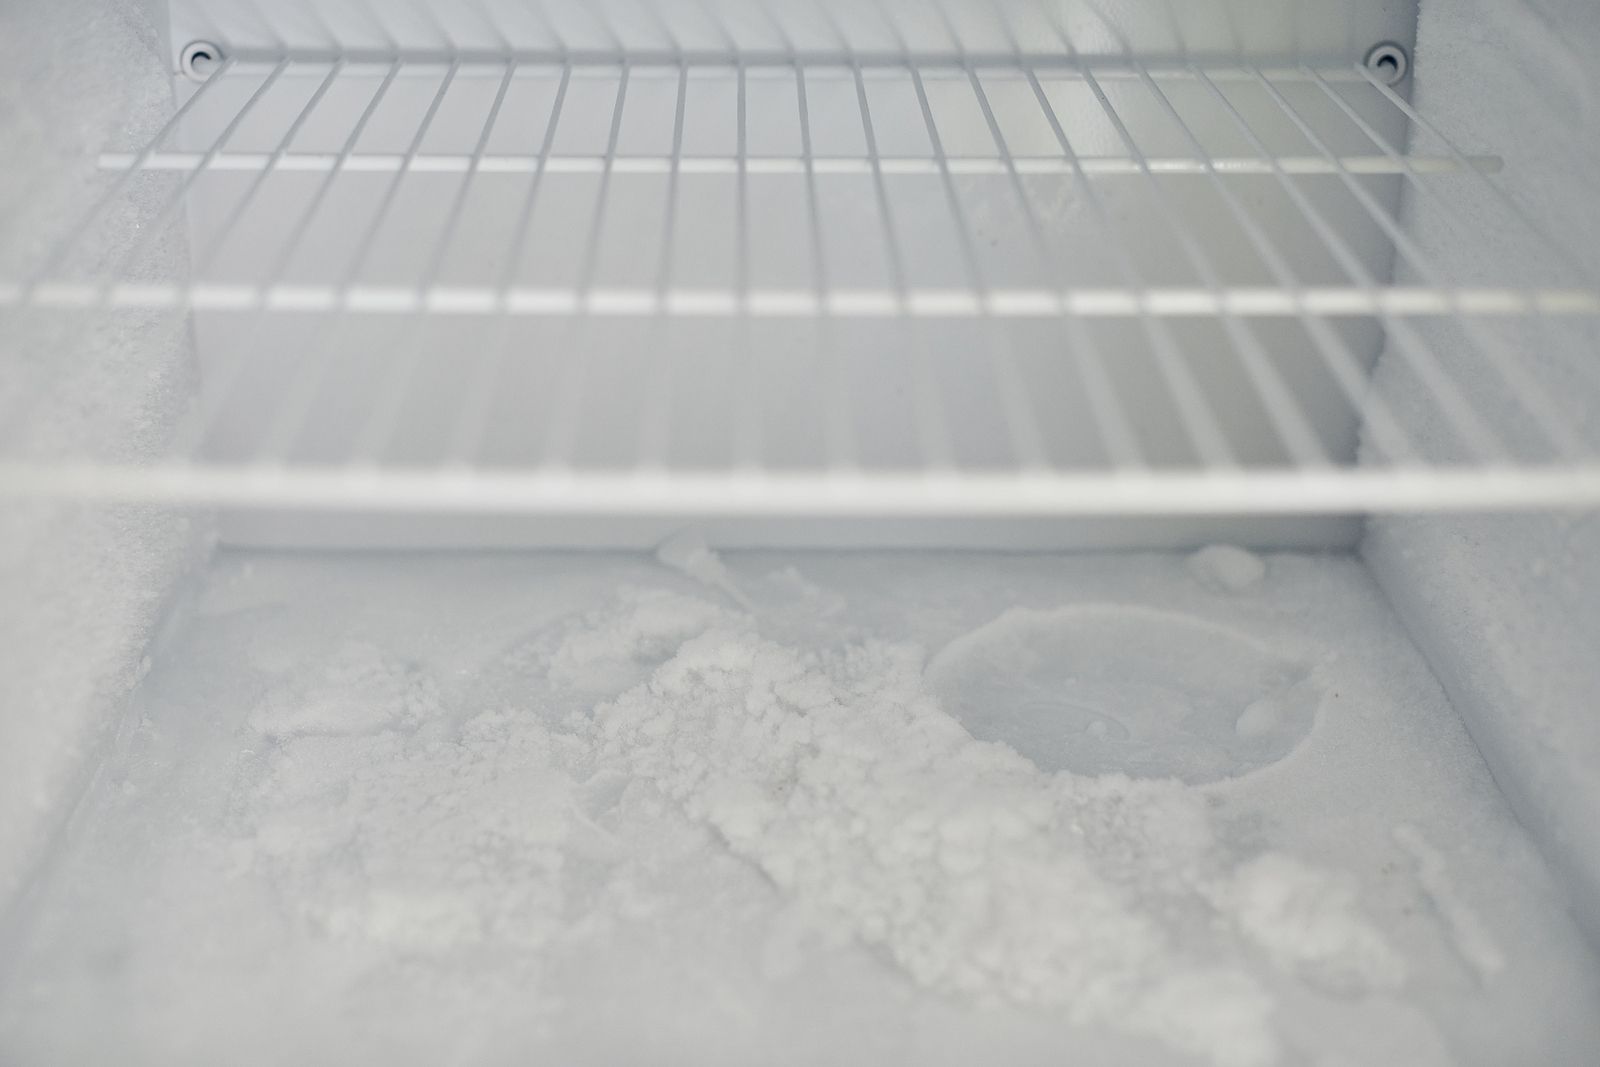 Cómo descongelar el congelador rápidamente paso a paso Foto: bigstock